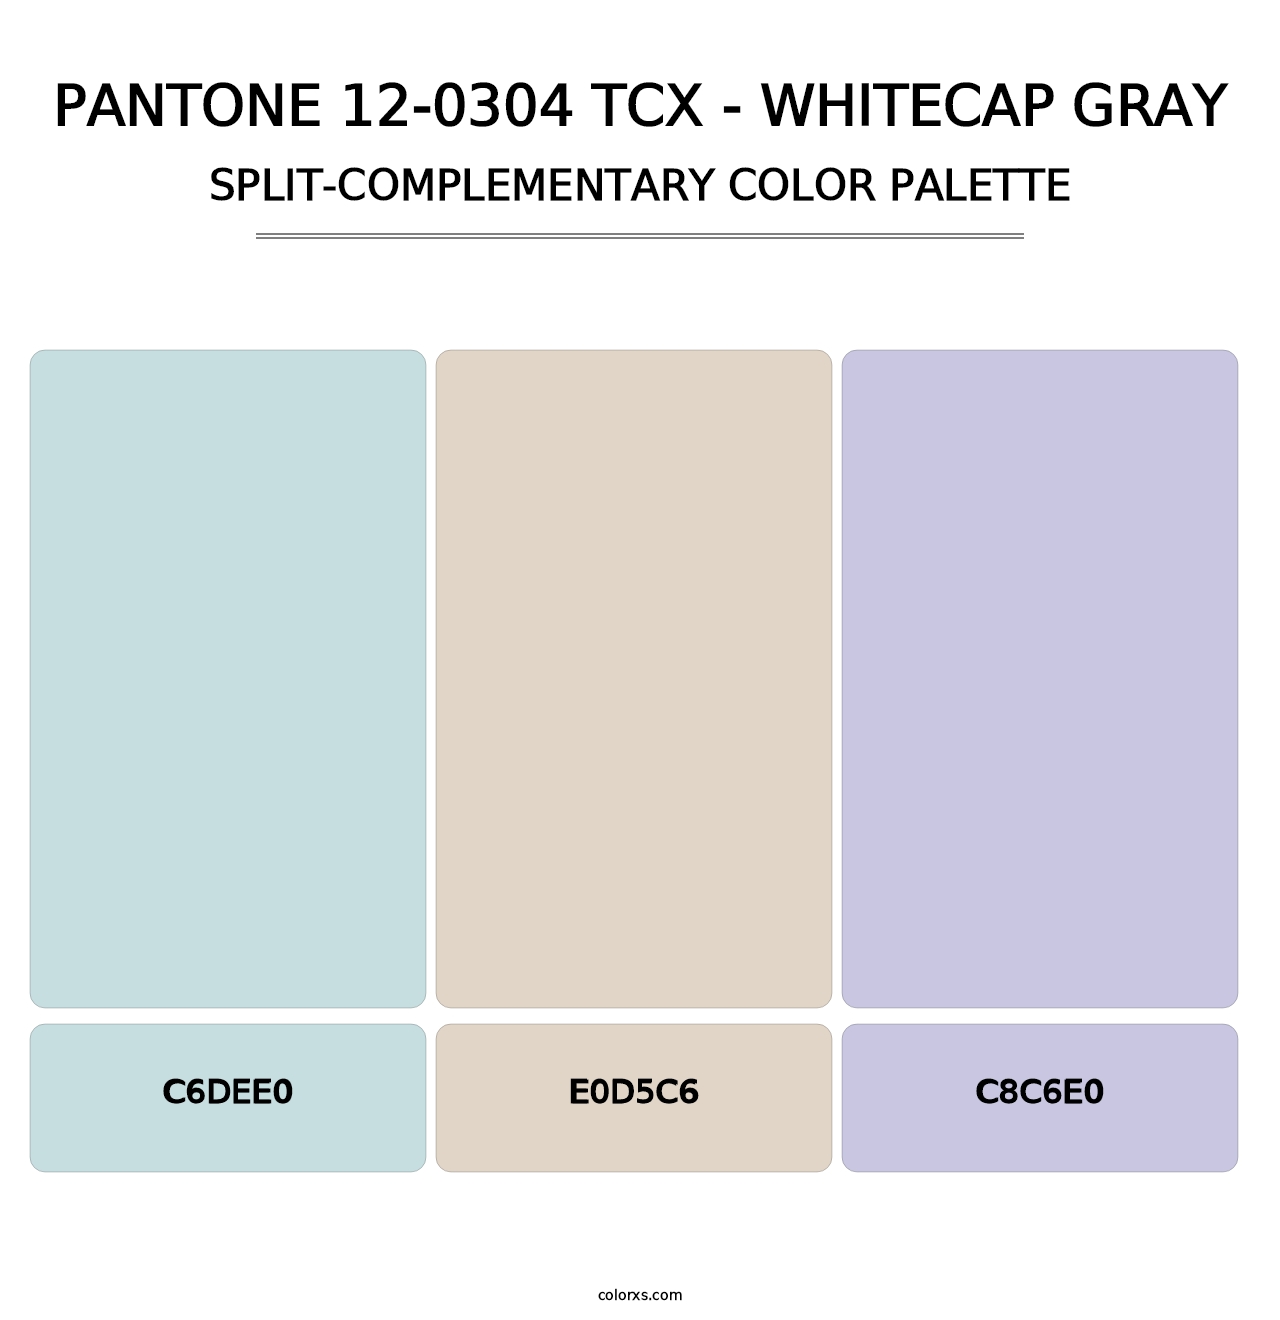 PANTONE 12-0304 TCX - Whitecap Gray - Split-Complementary Color Palette